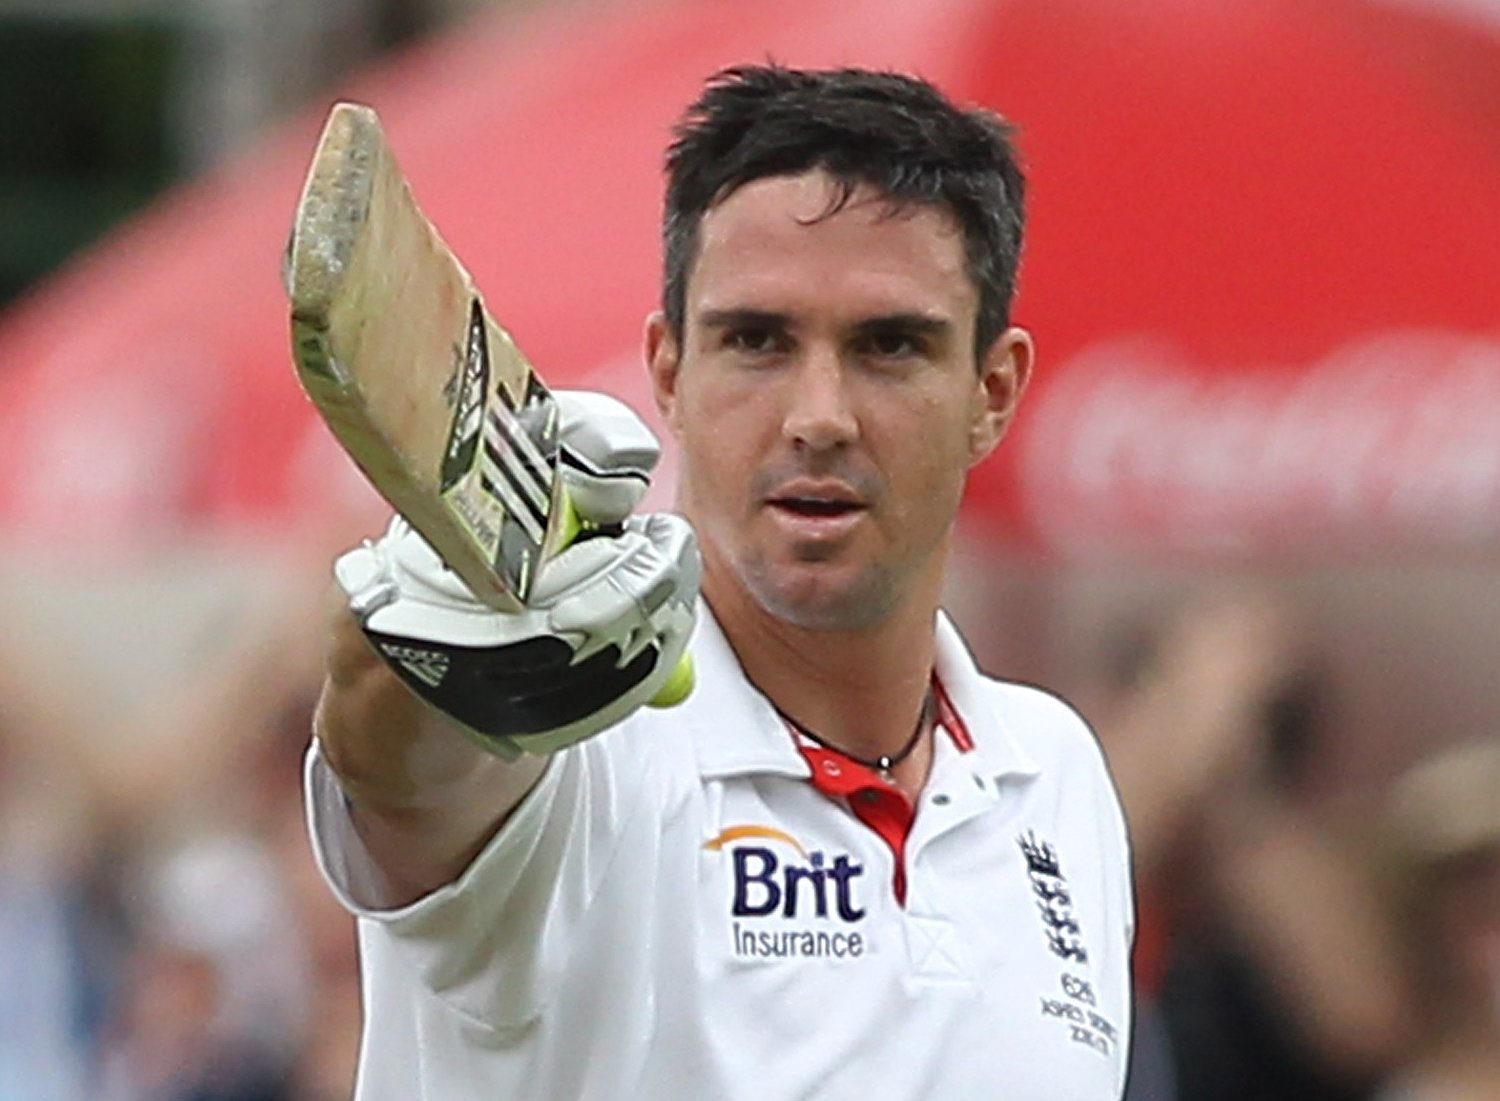 #दिलचस्प: क्या आपको पता हैं केविन पीटरसन भी लगा चुके हैं दिलीप ट्रॉफी के दोनों पारियों में भारत में शतक 1